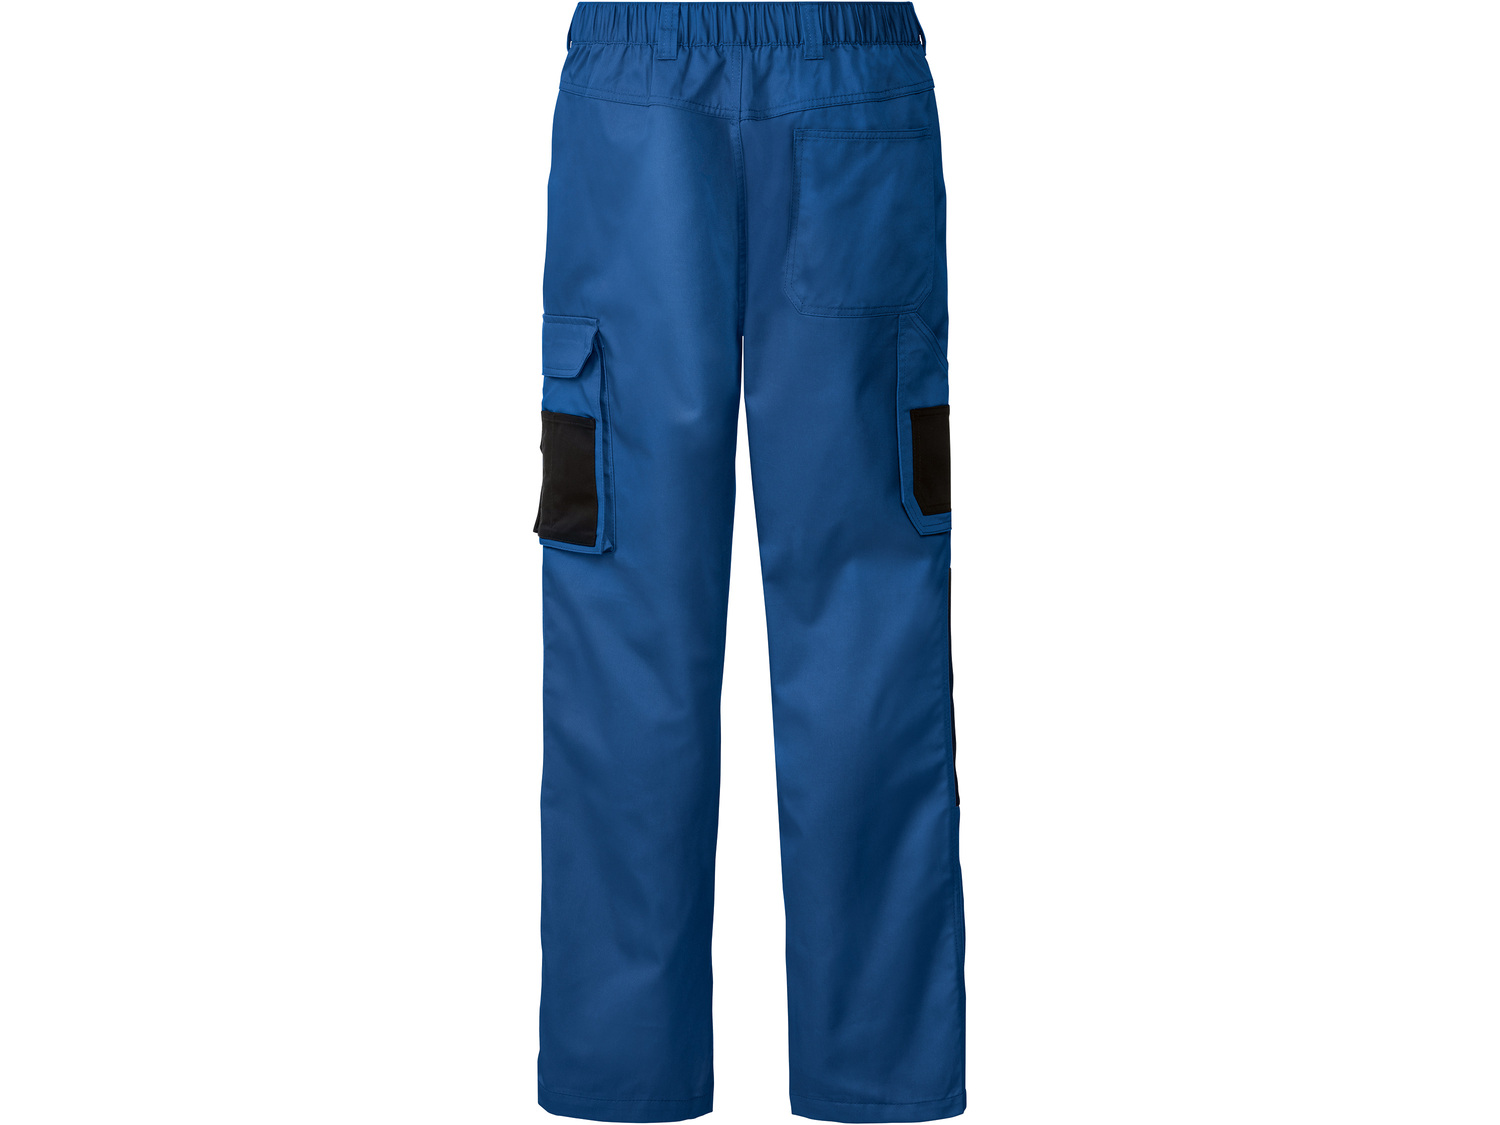 Spodnie robocze męskie Parkside, cena 49,99 PLN 
- rozmiary: 48-54
- kieszenie ...